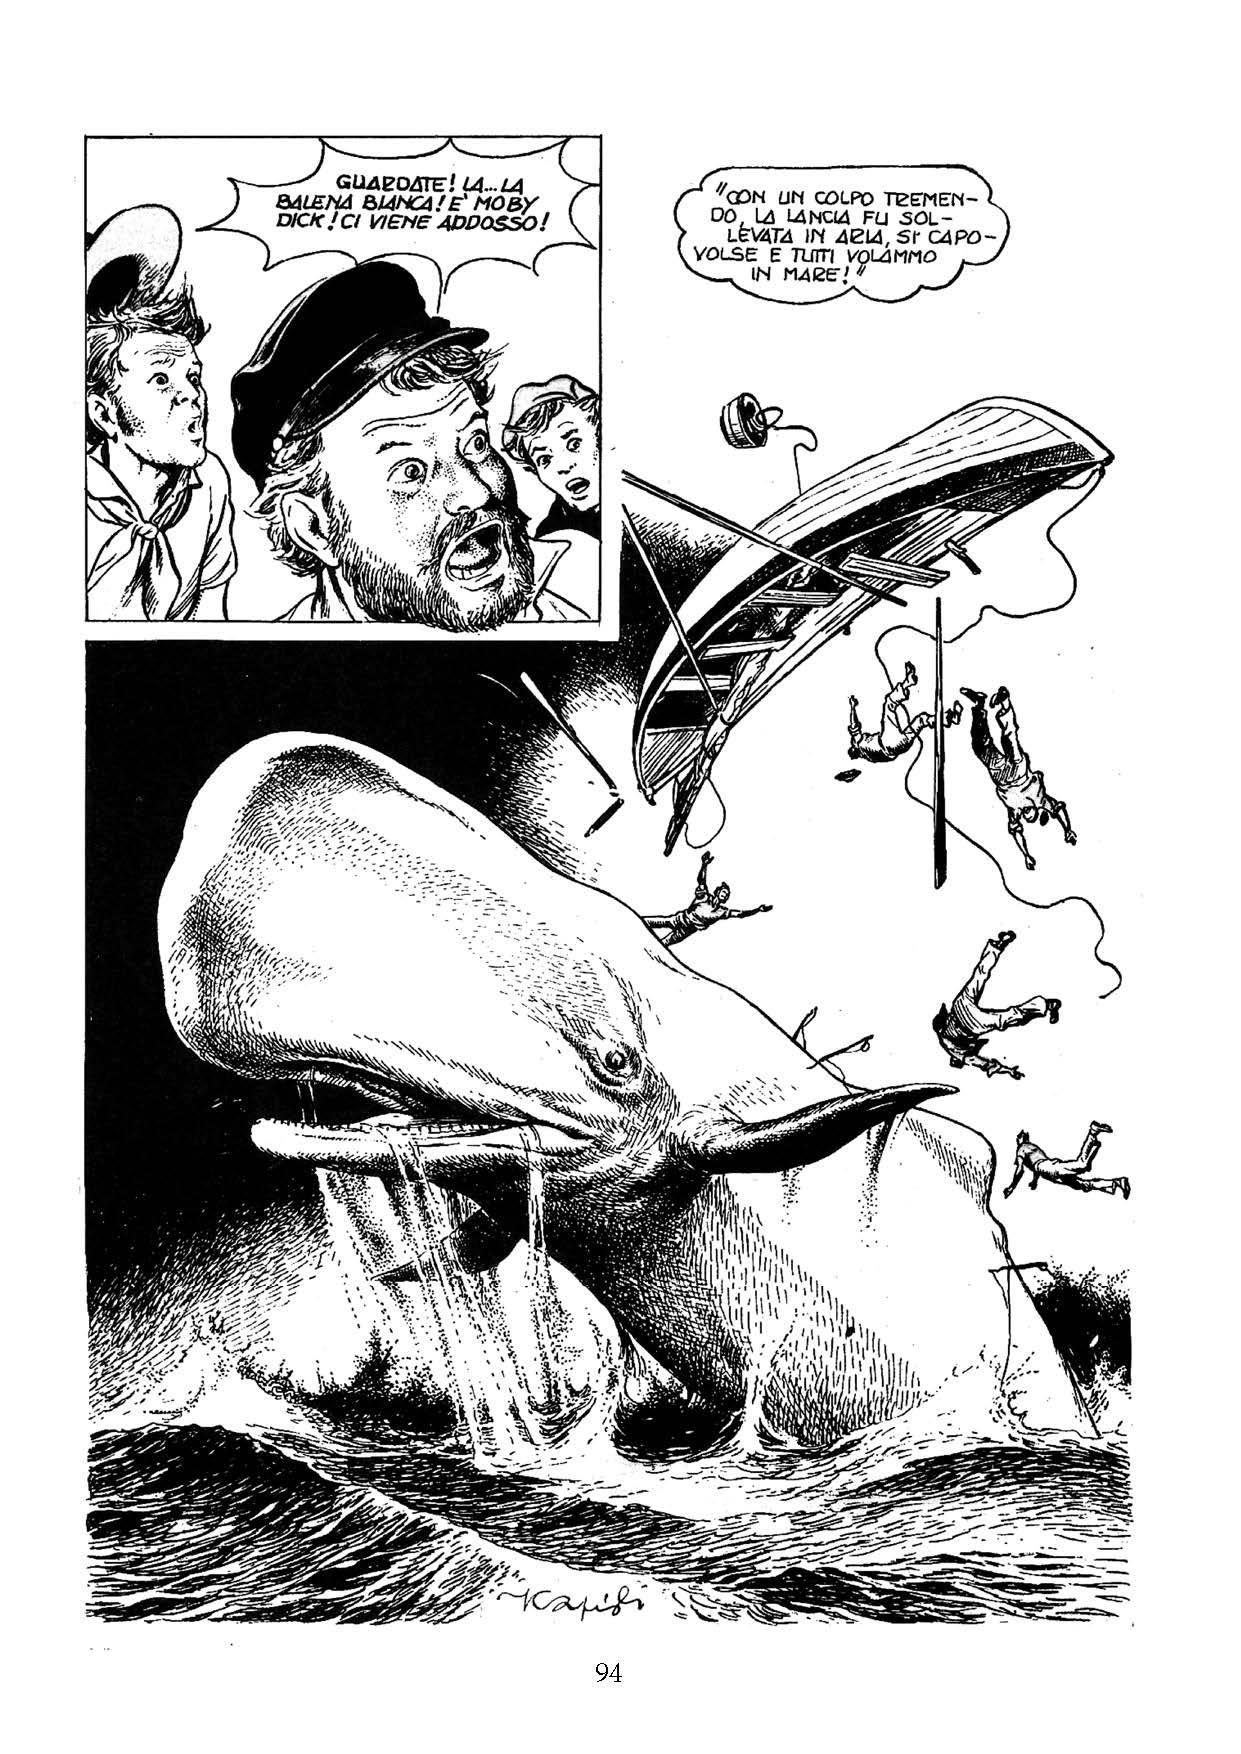 “Moby Dick la balena bianca”, di Herman Melville, disegno di Franco Caprioli su sceneggiatura di Massimo Liorni (Edizioni NPE)